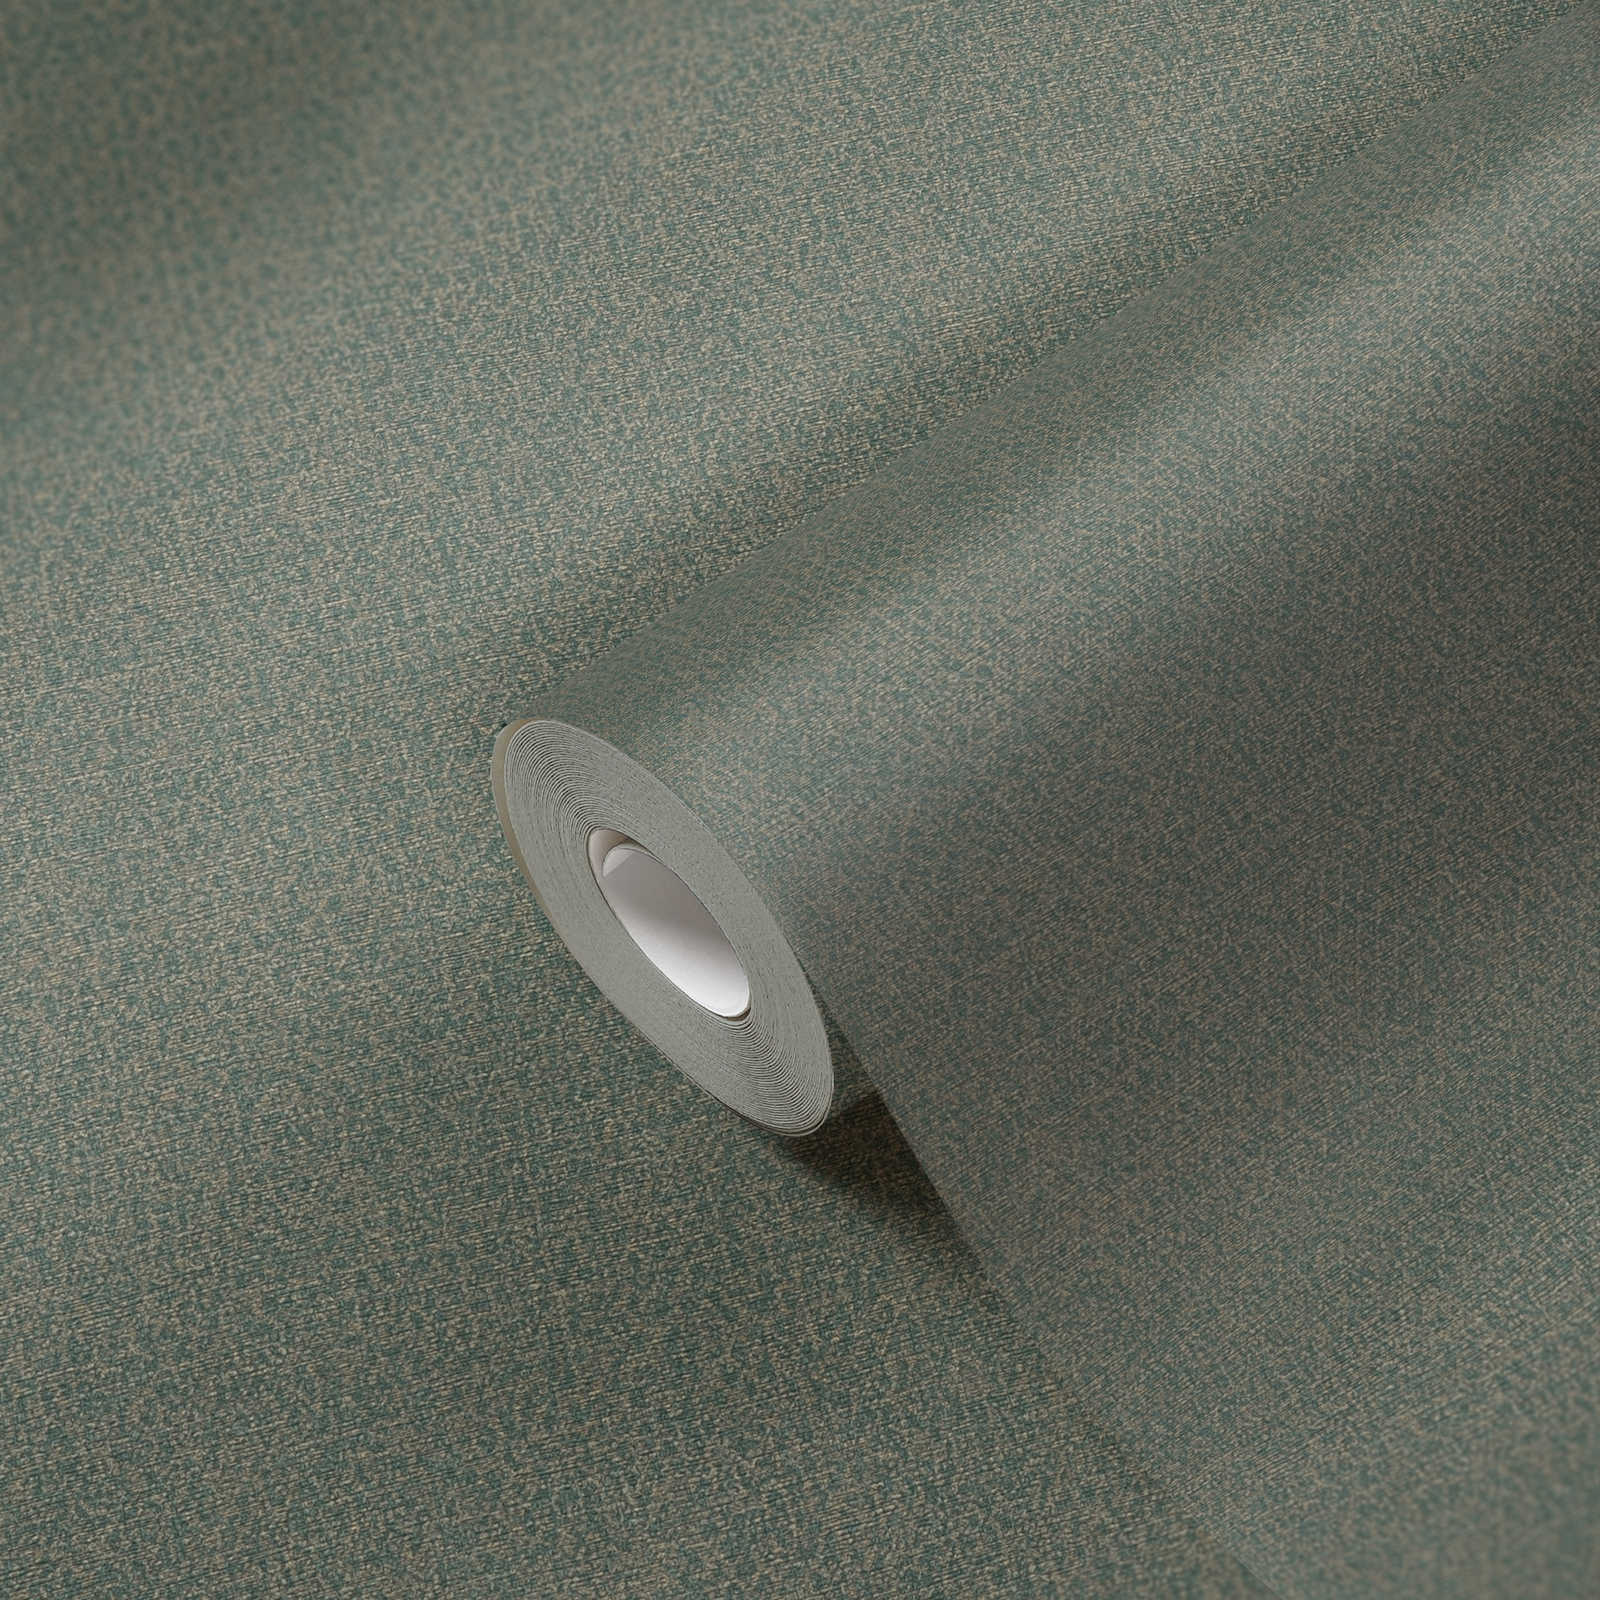             Glanzend vliesbehang met fijn gevlekt patroon PVC-vrij - groen, goud
        